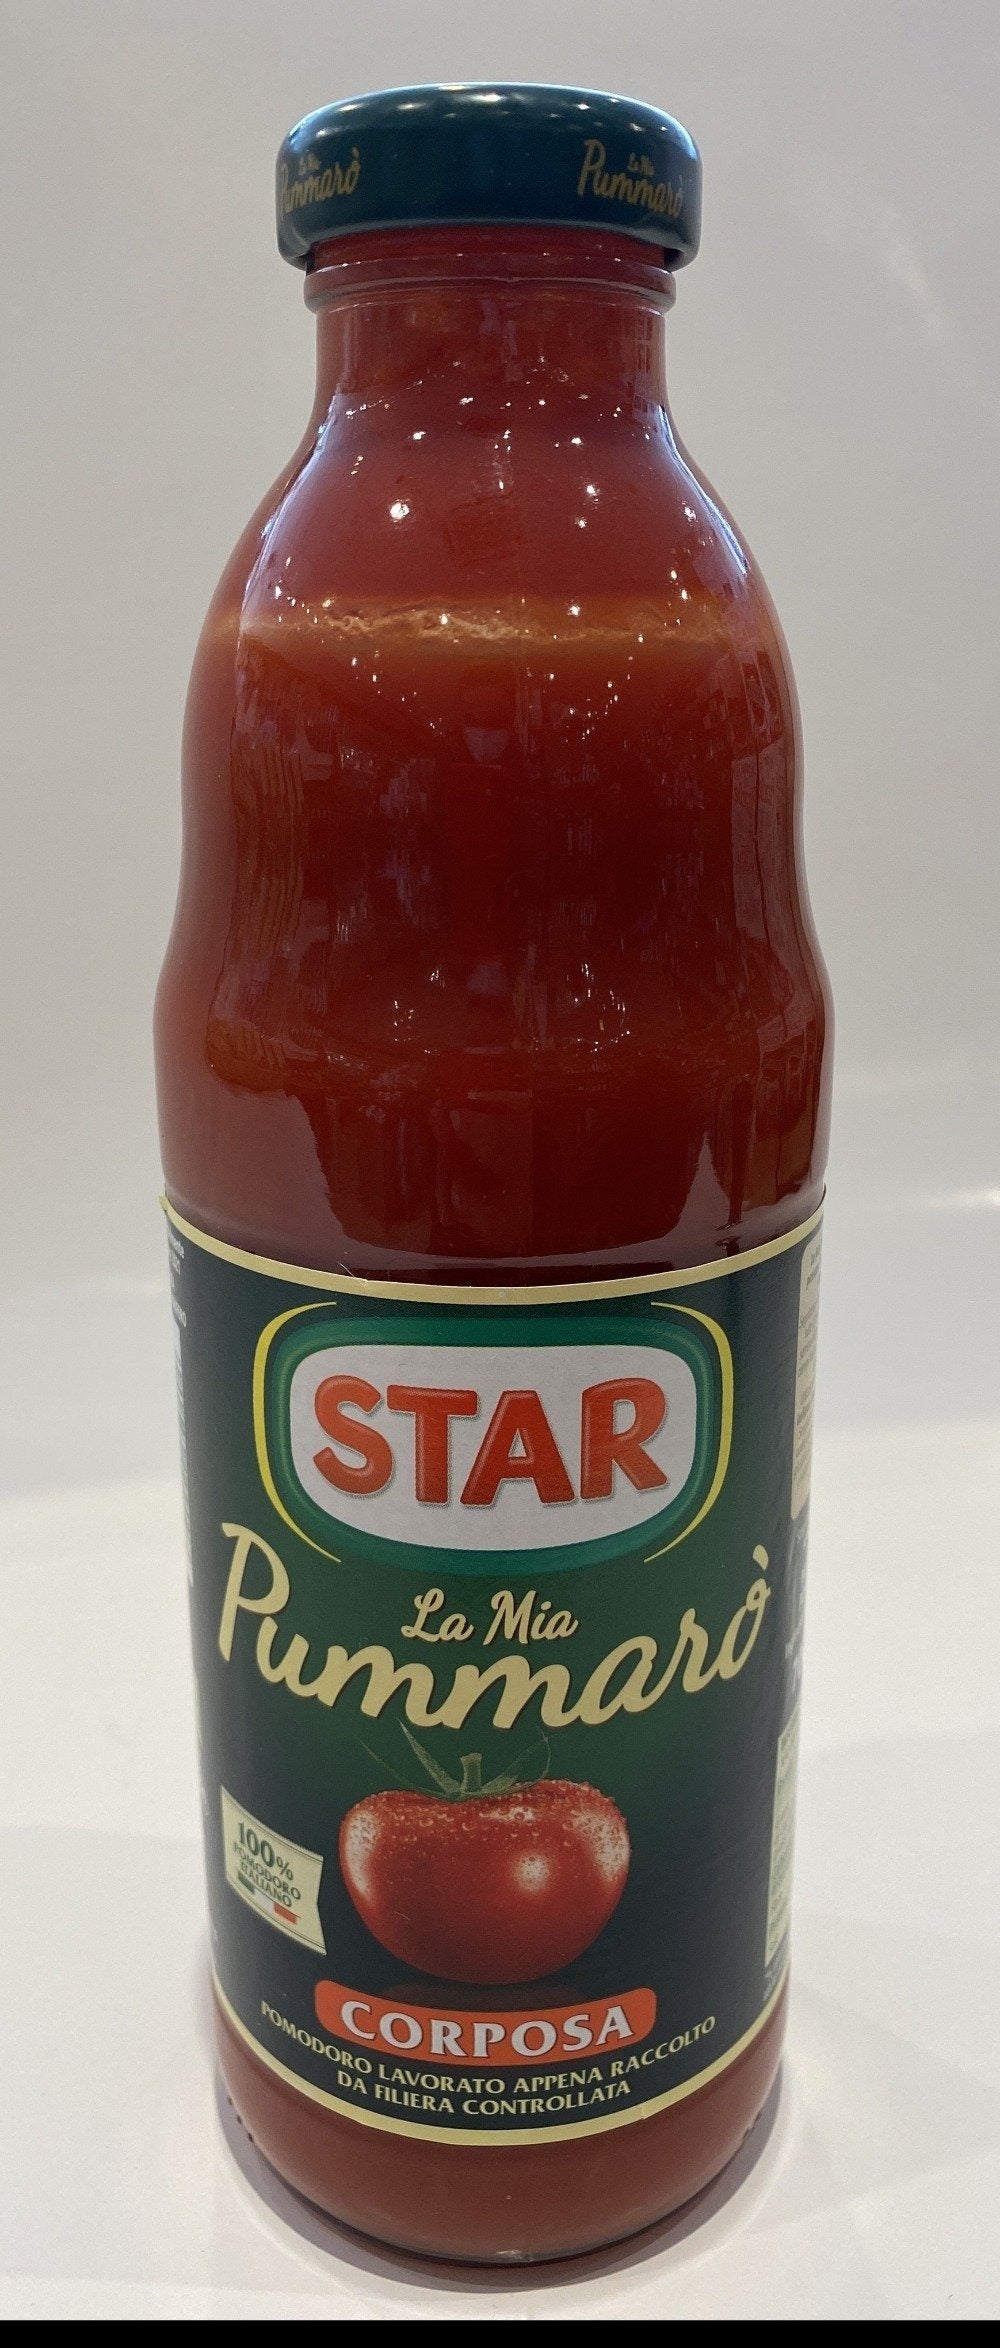 Star - La Mia Pummaro Tomato Puree Corposa - 700 g